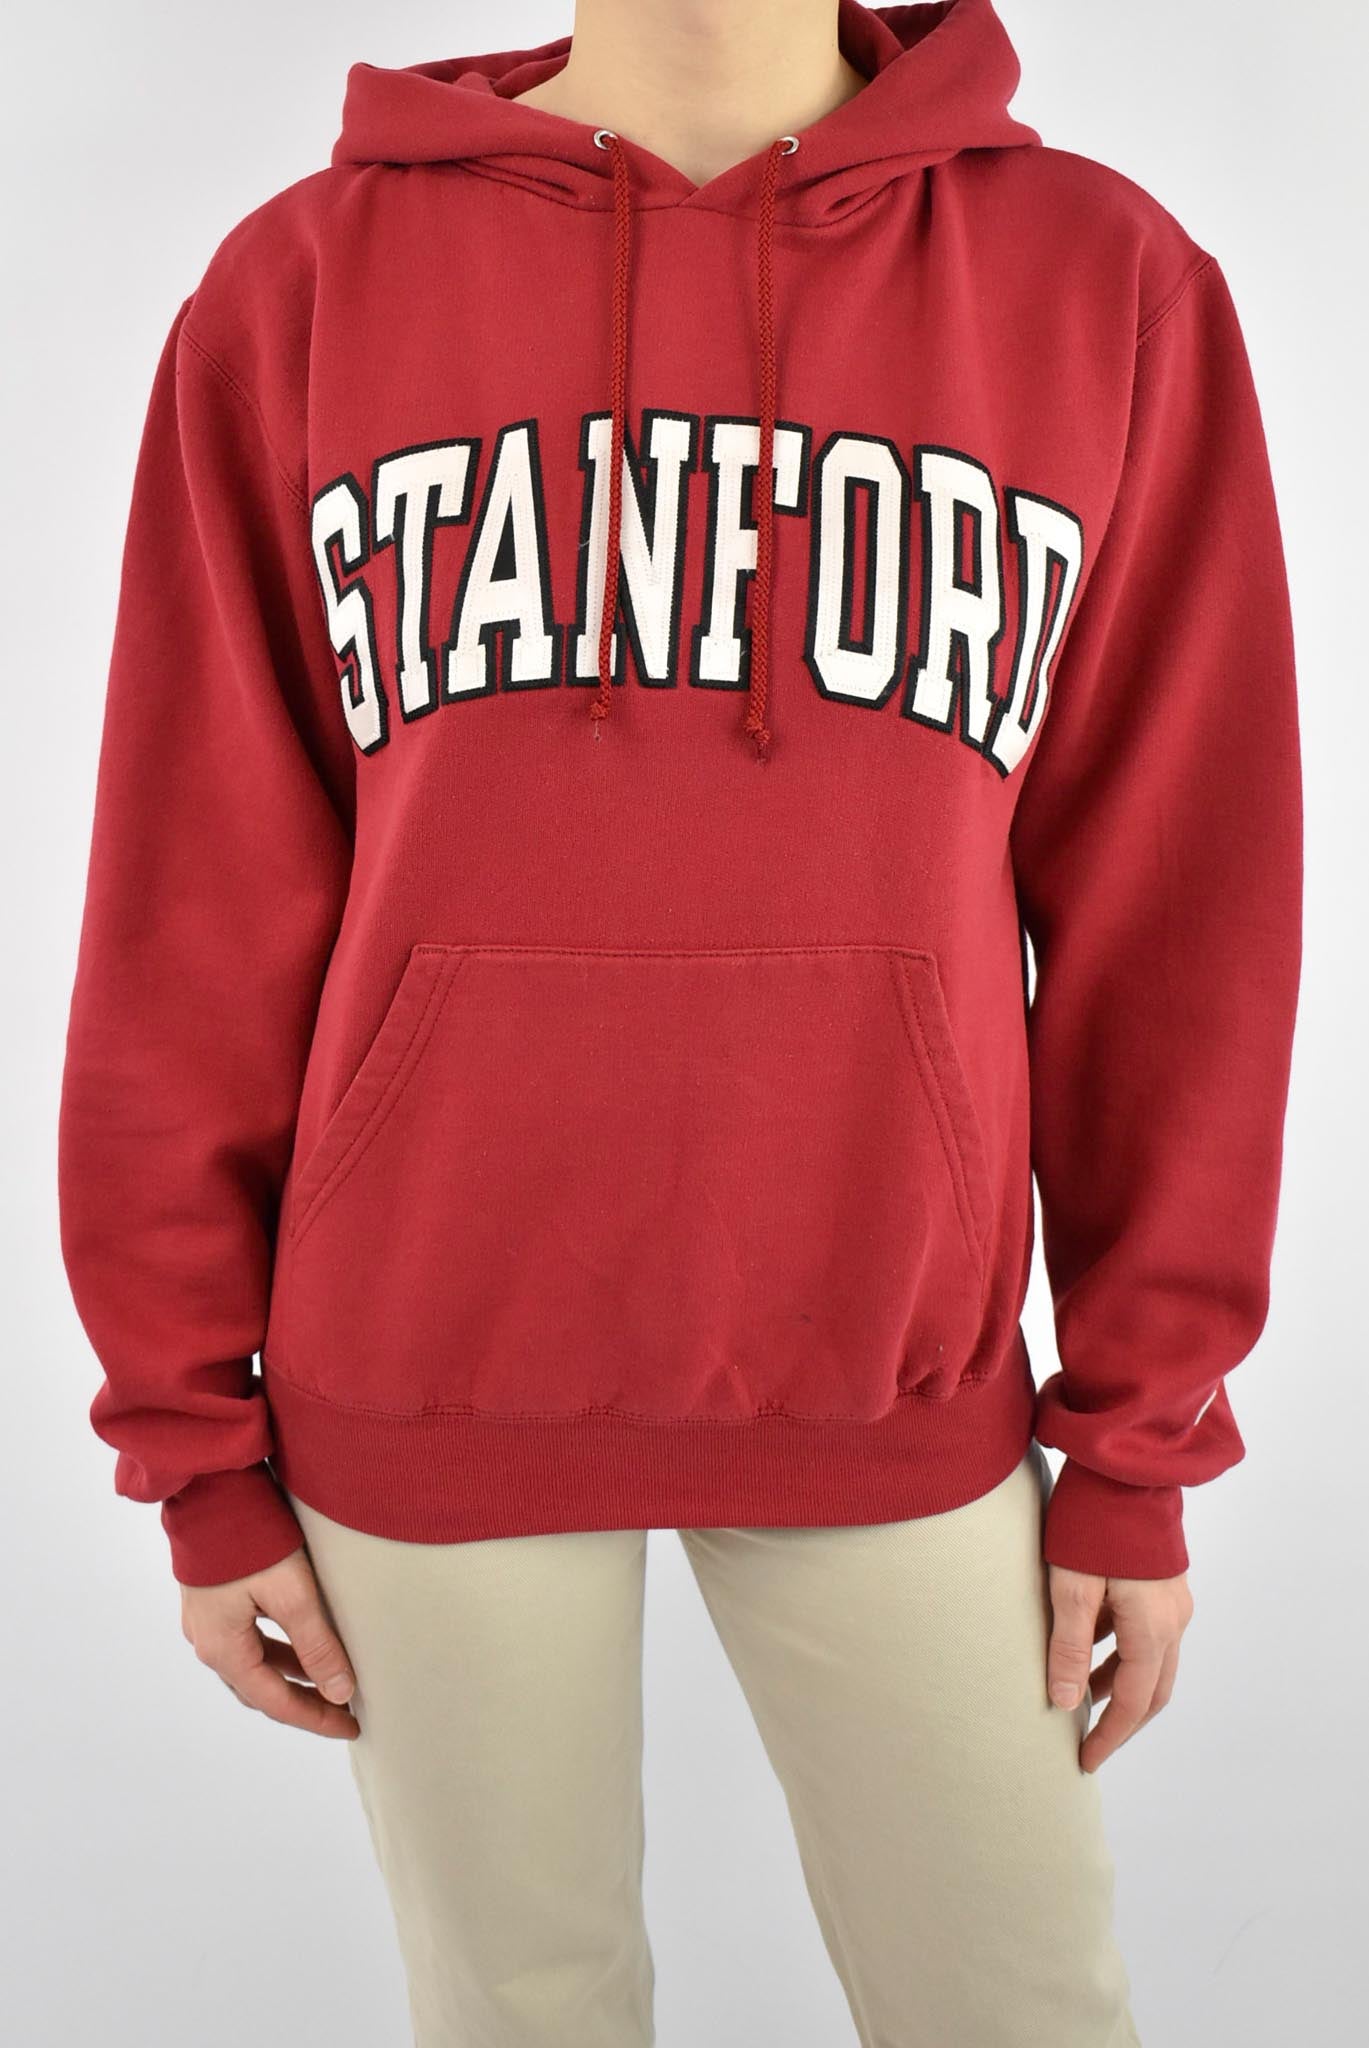 stanford university hoodie